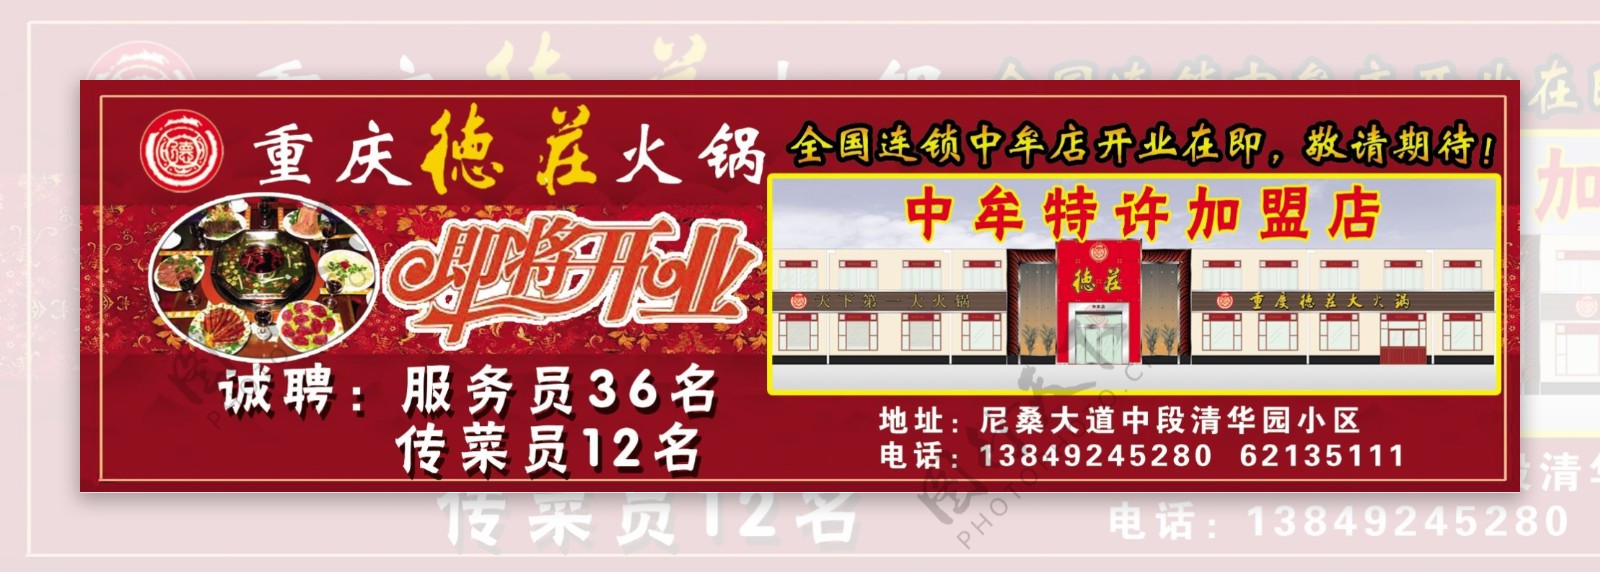 重庆德庄火锅火锅红色背景火锅广告图片